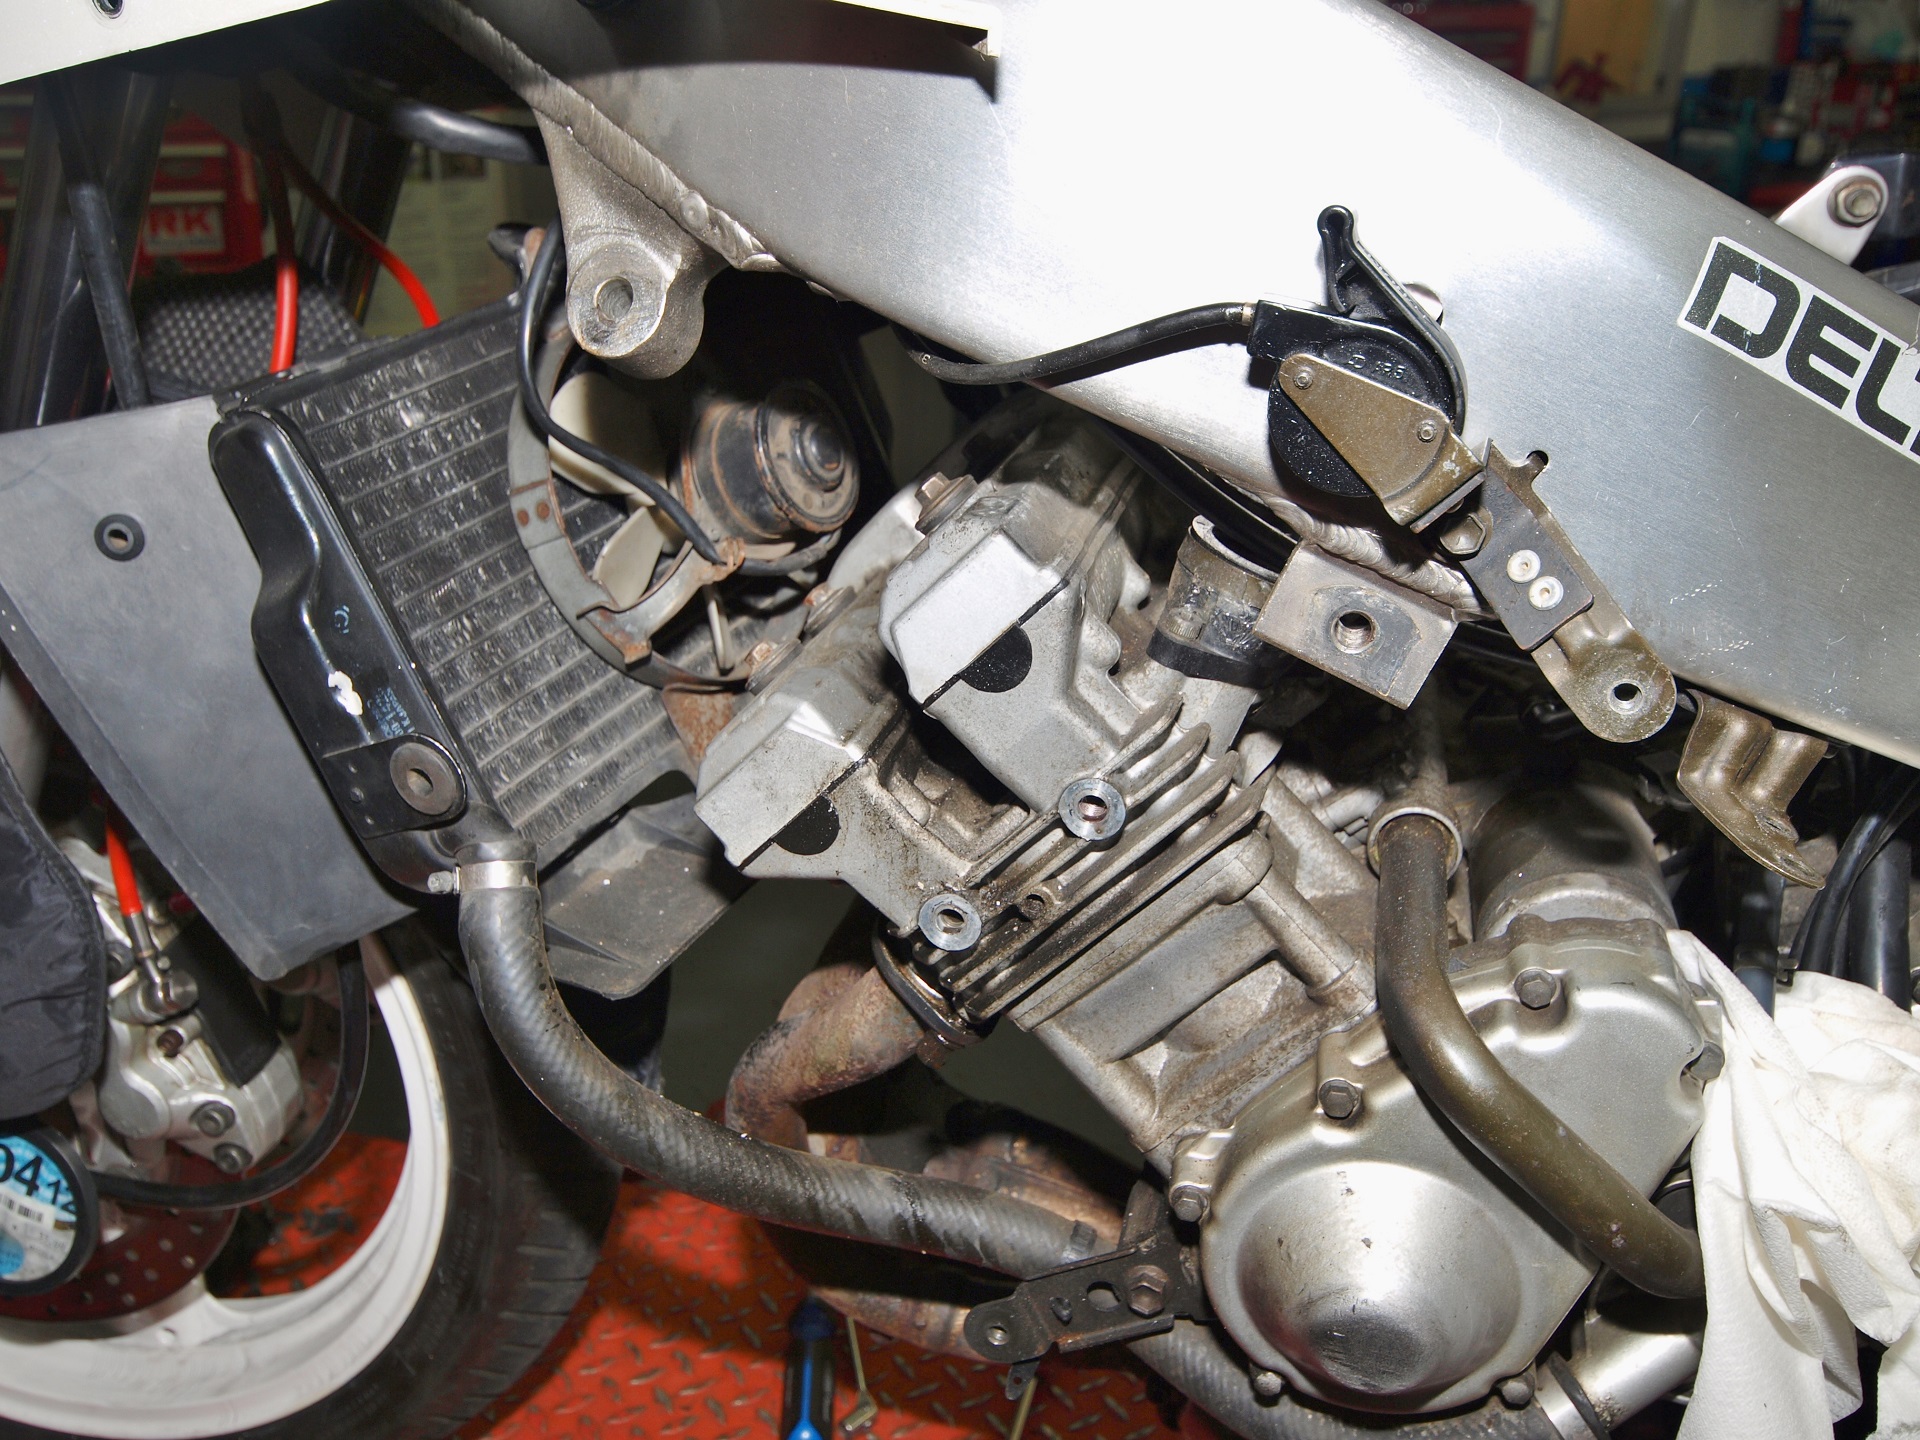 Side profile of Yamaha engine